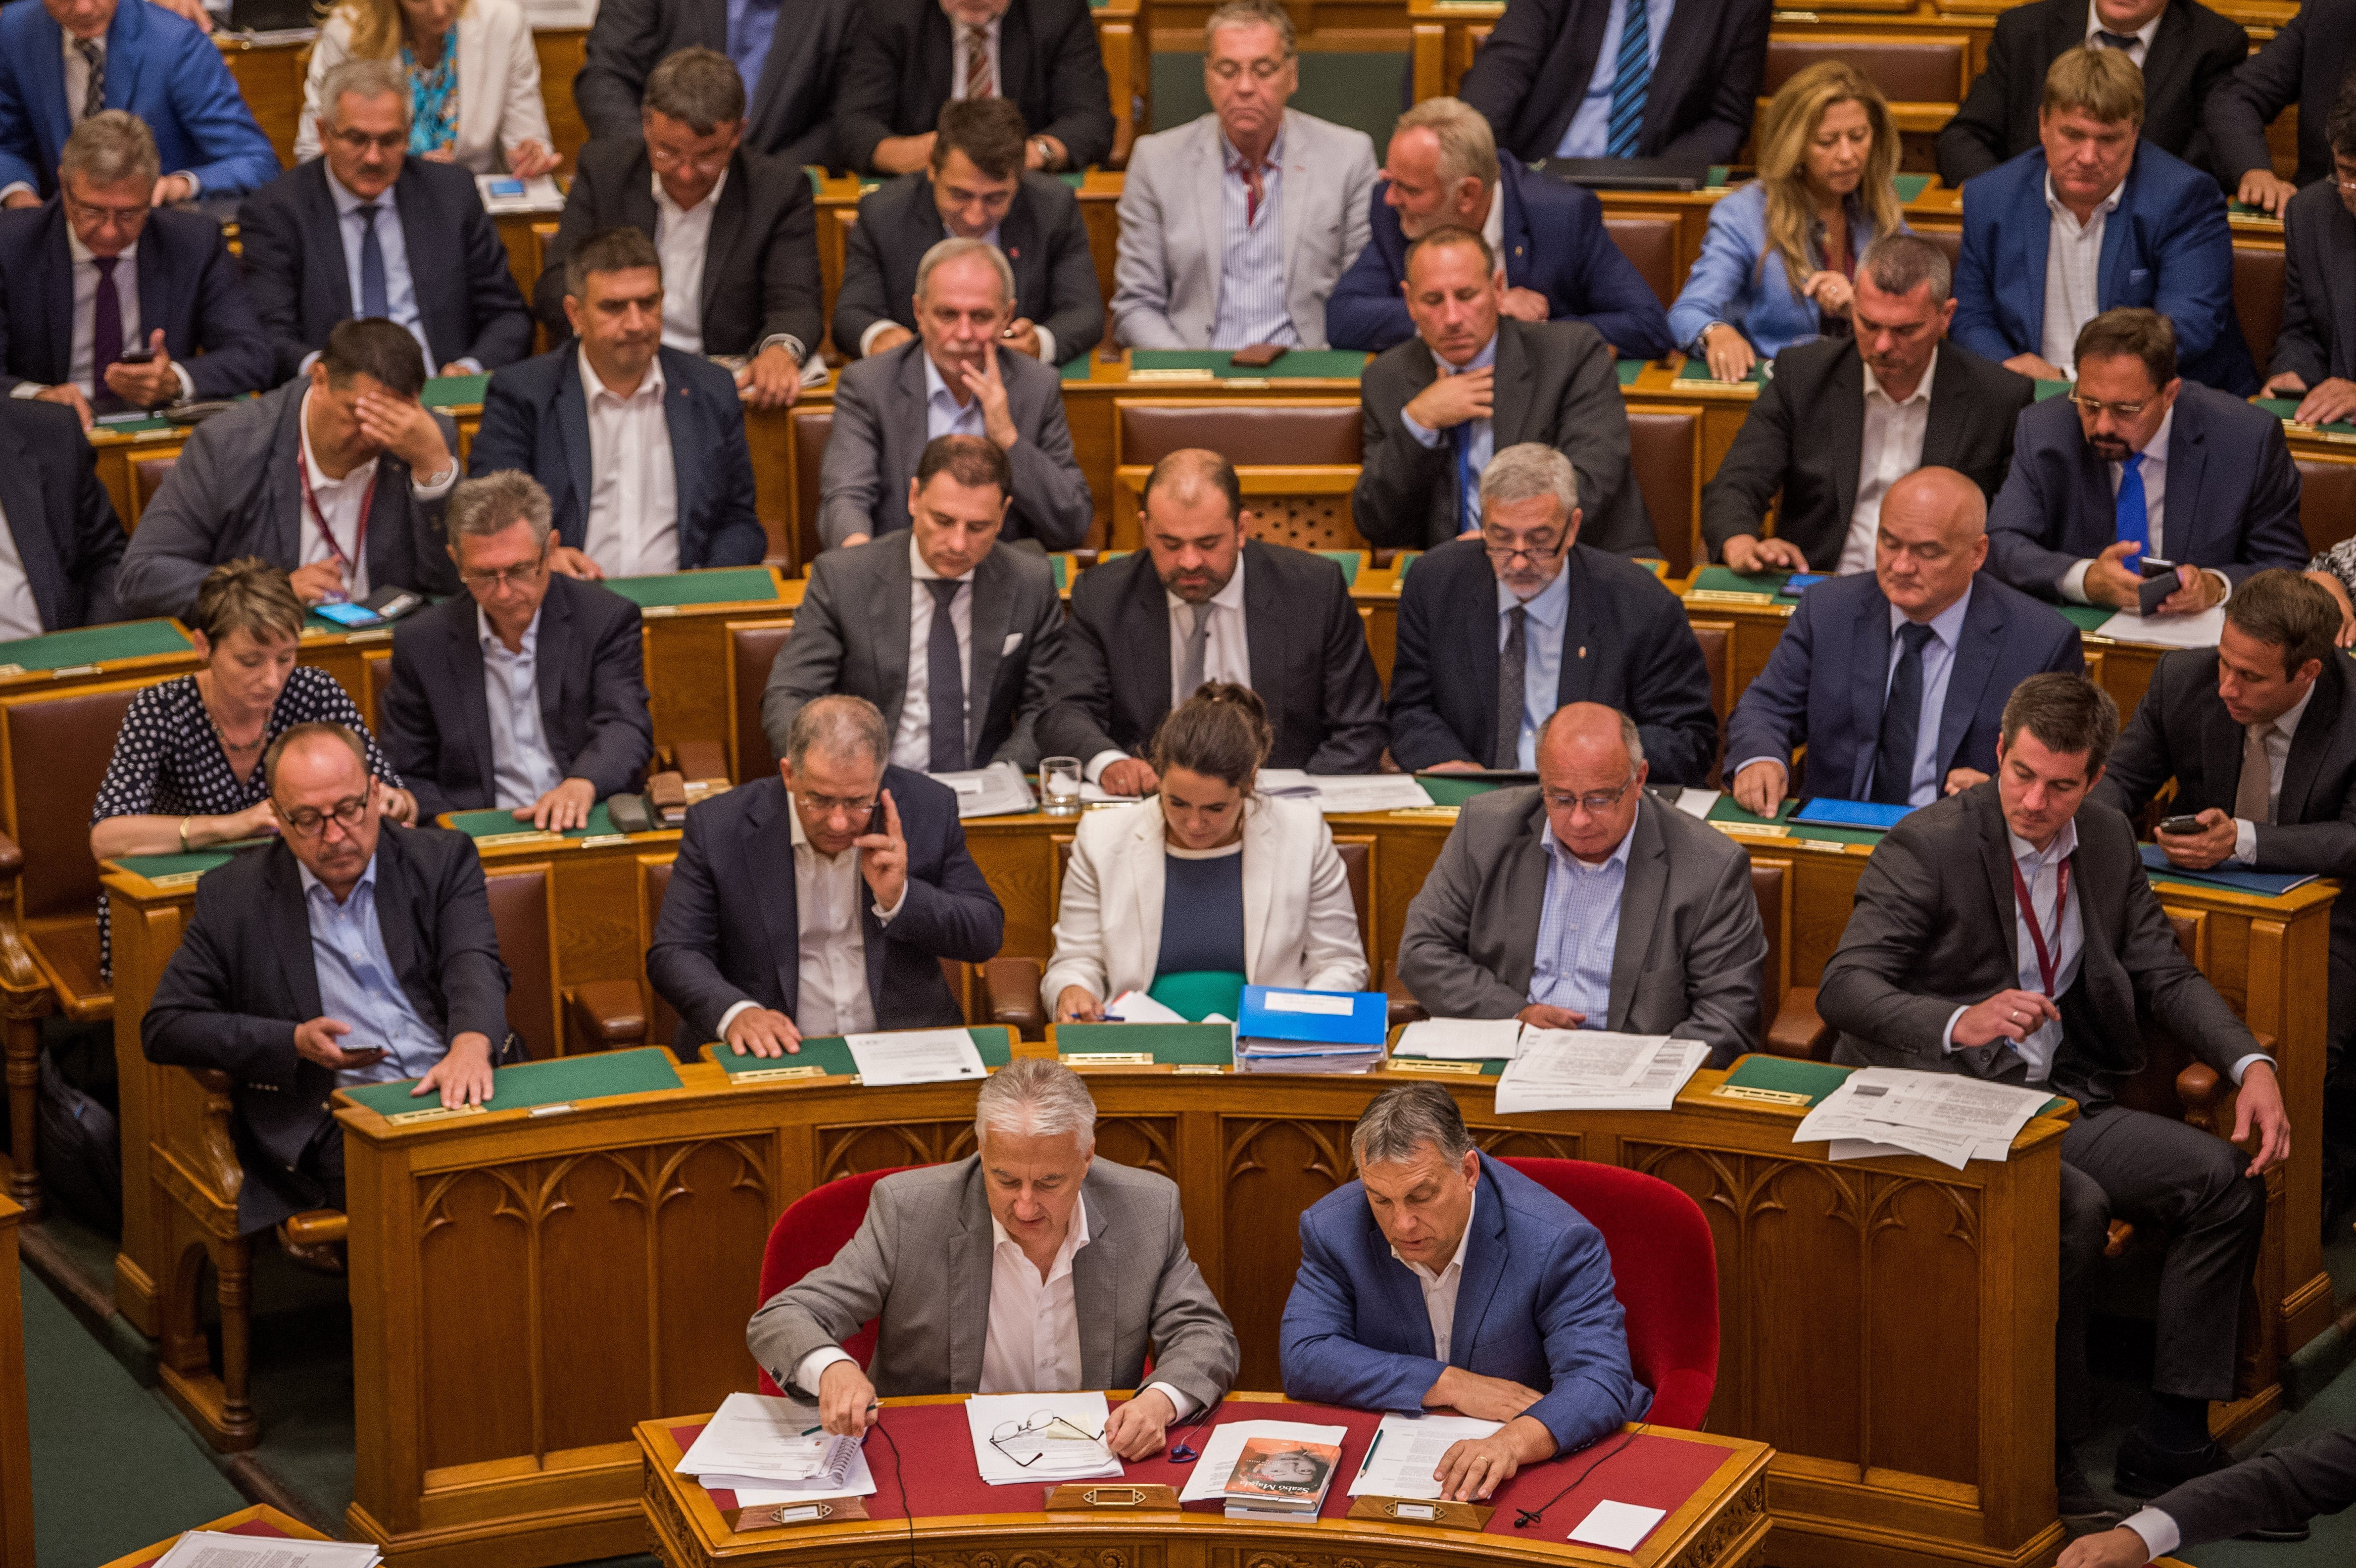 Még Orbán is bement gombot nyomni: megszavazták a képviselői fizetések emelését 